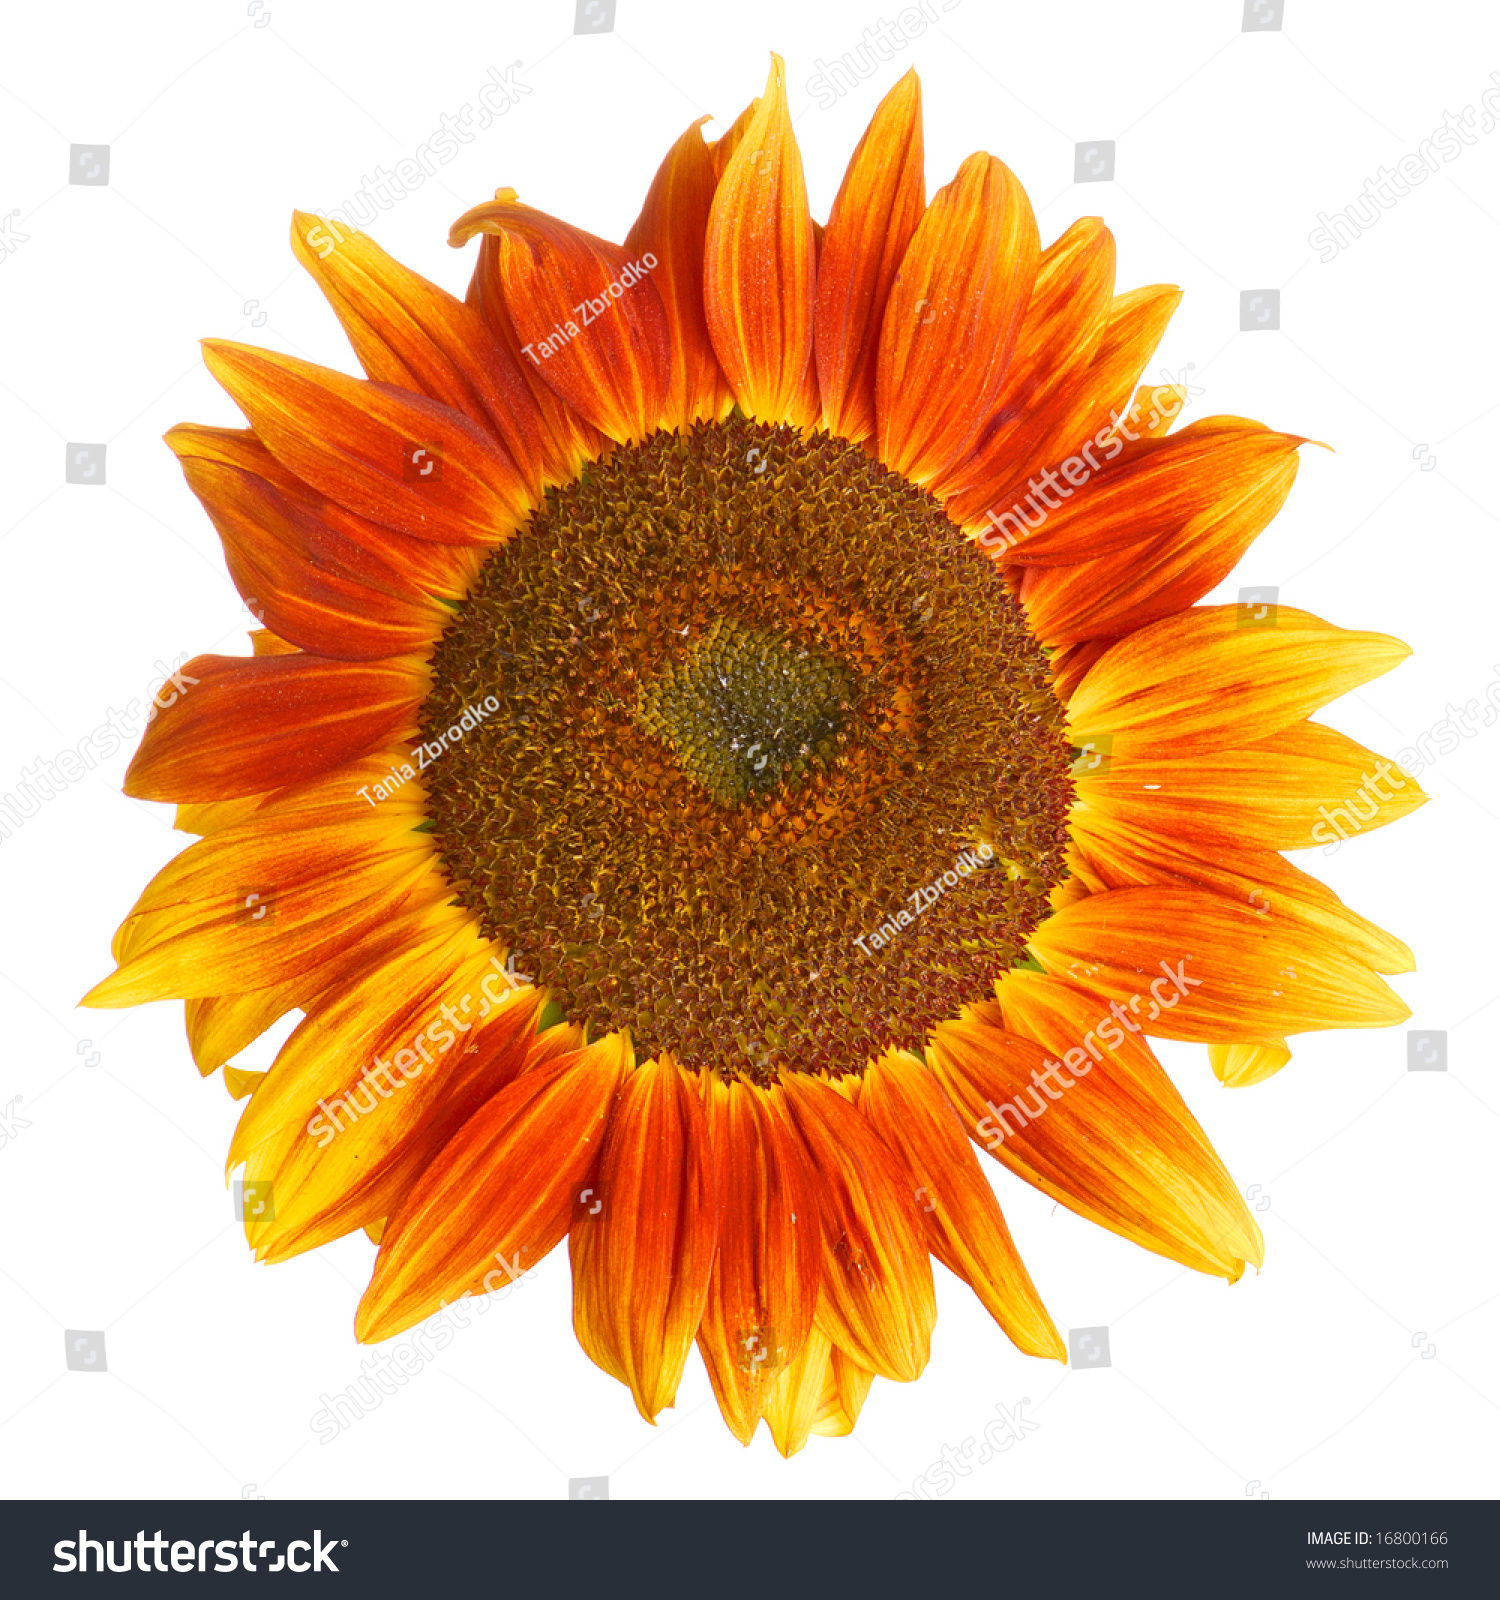 Single Sunflower Isolated On White Background. Stock Photo 16800166